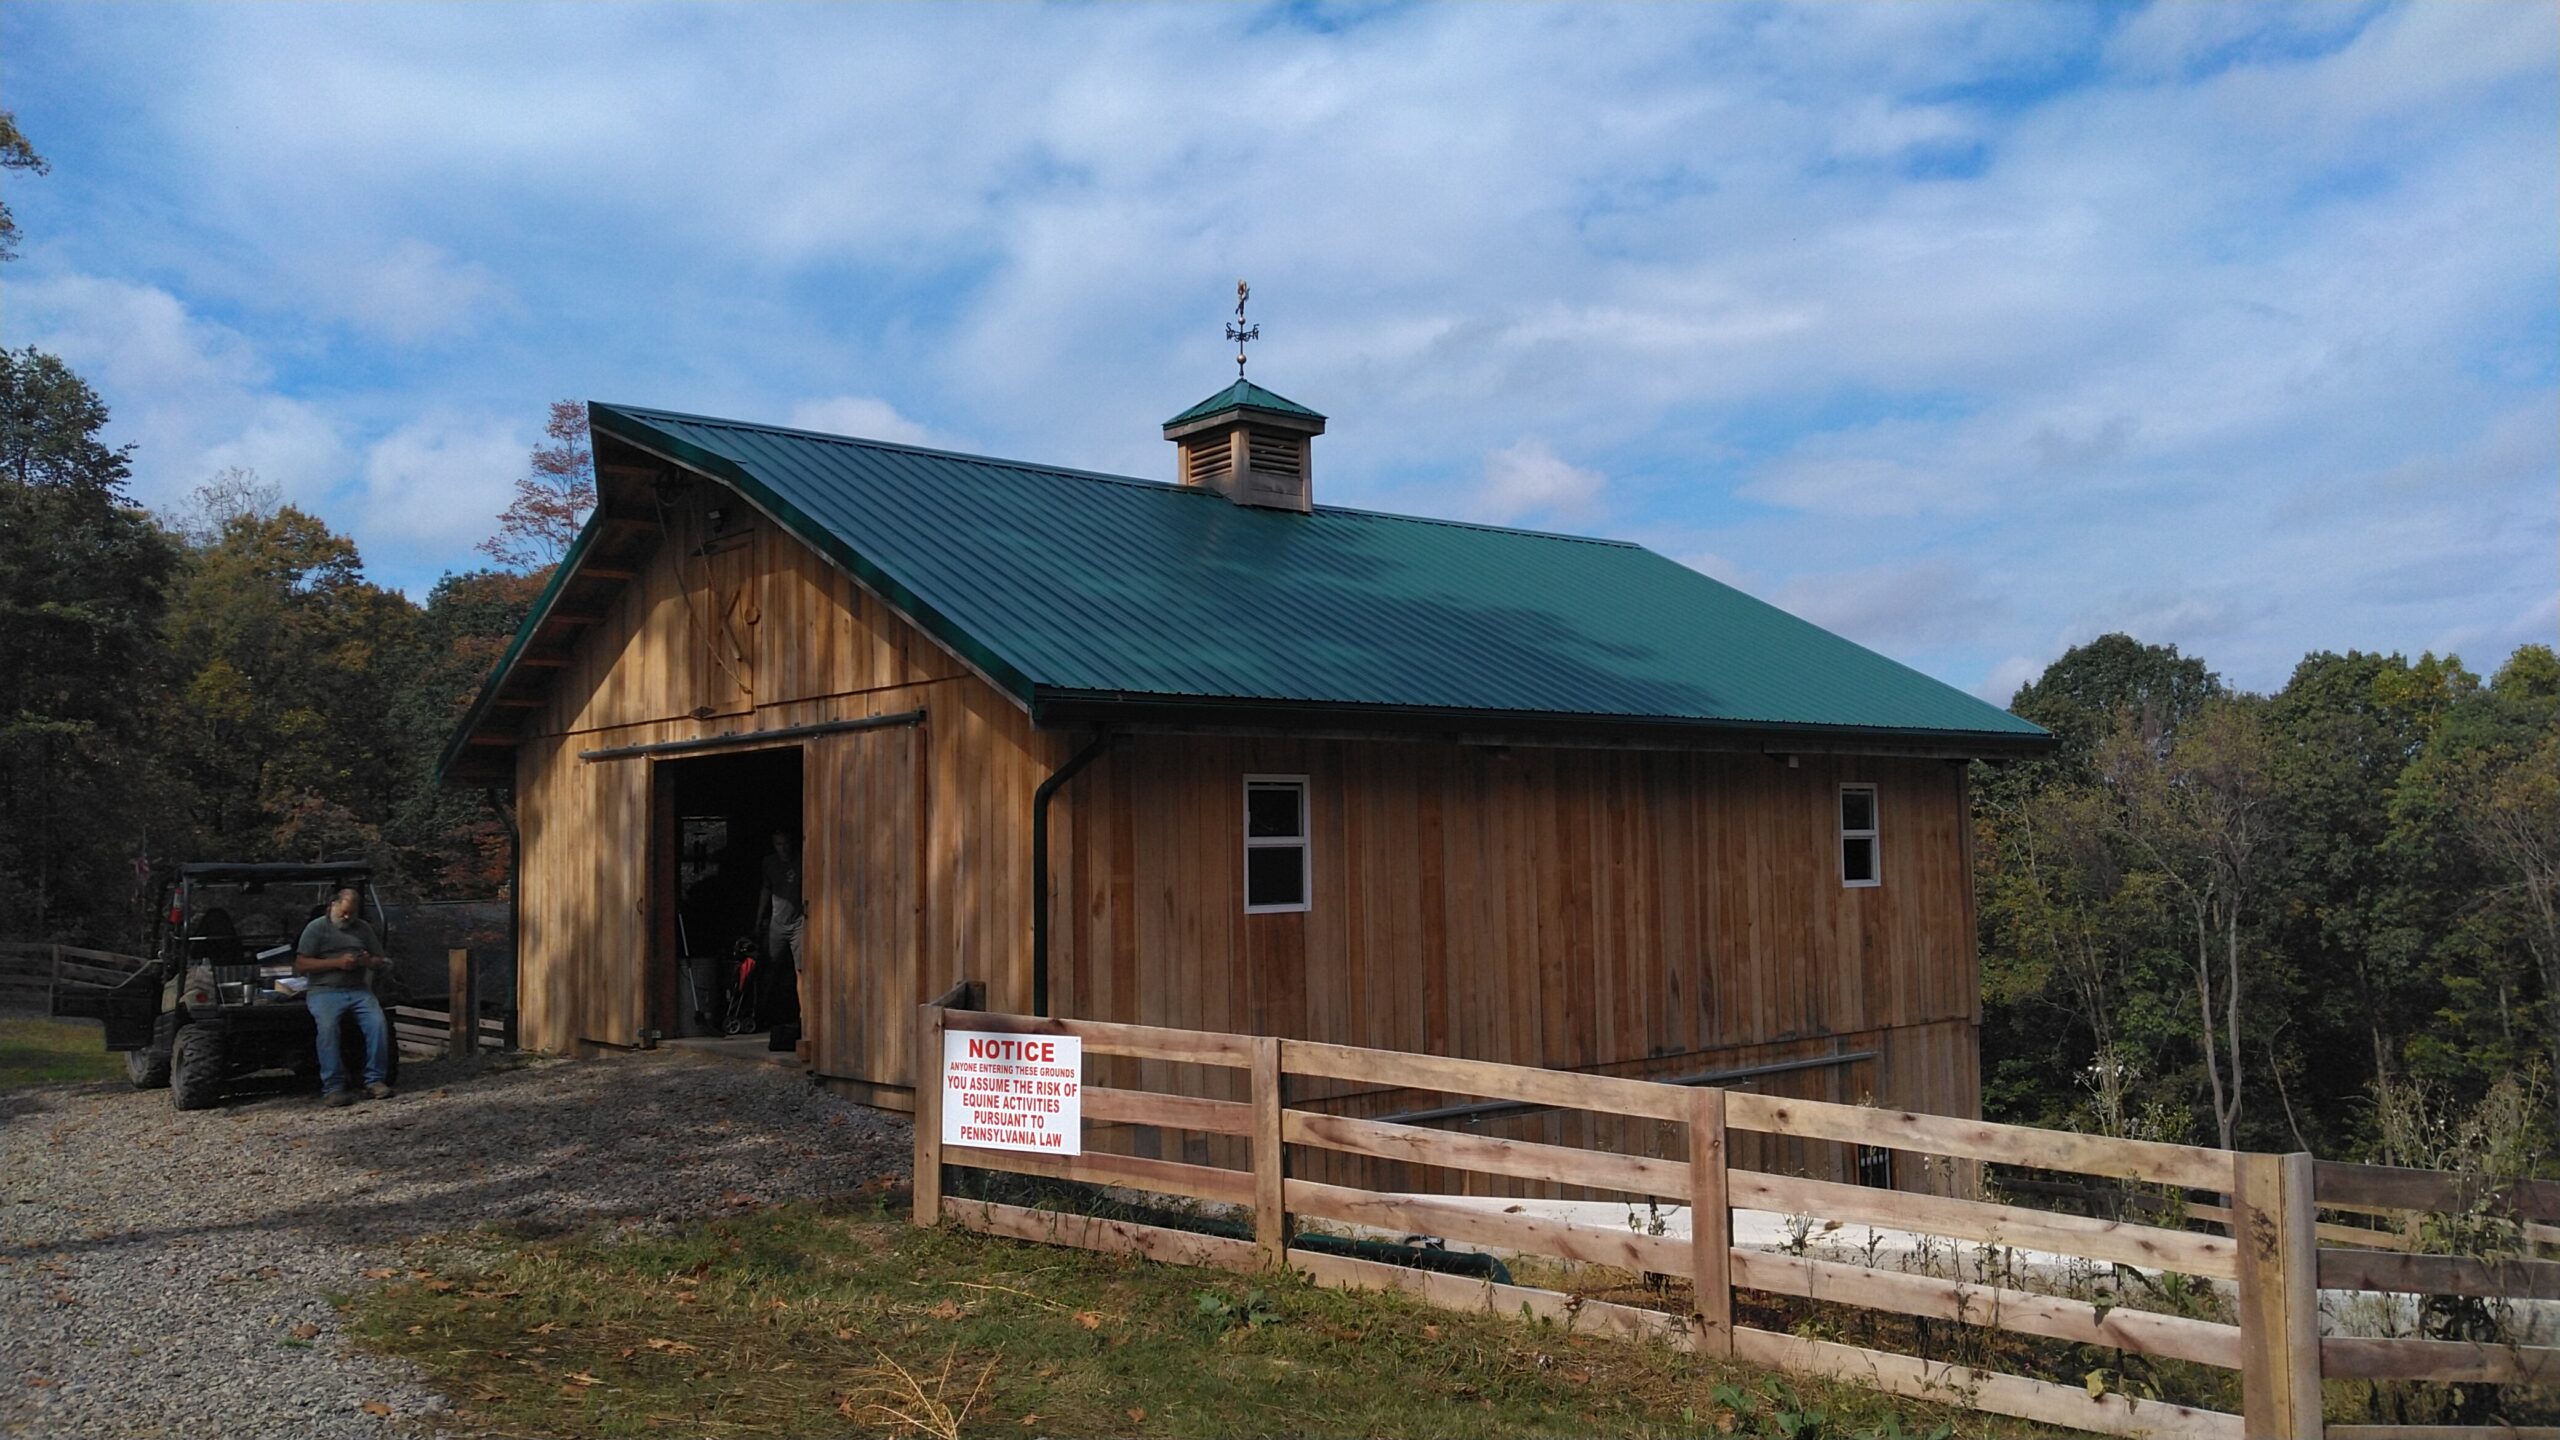 The Kanouff Barn